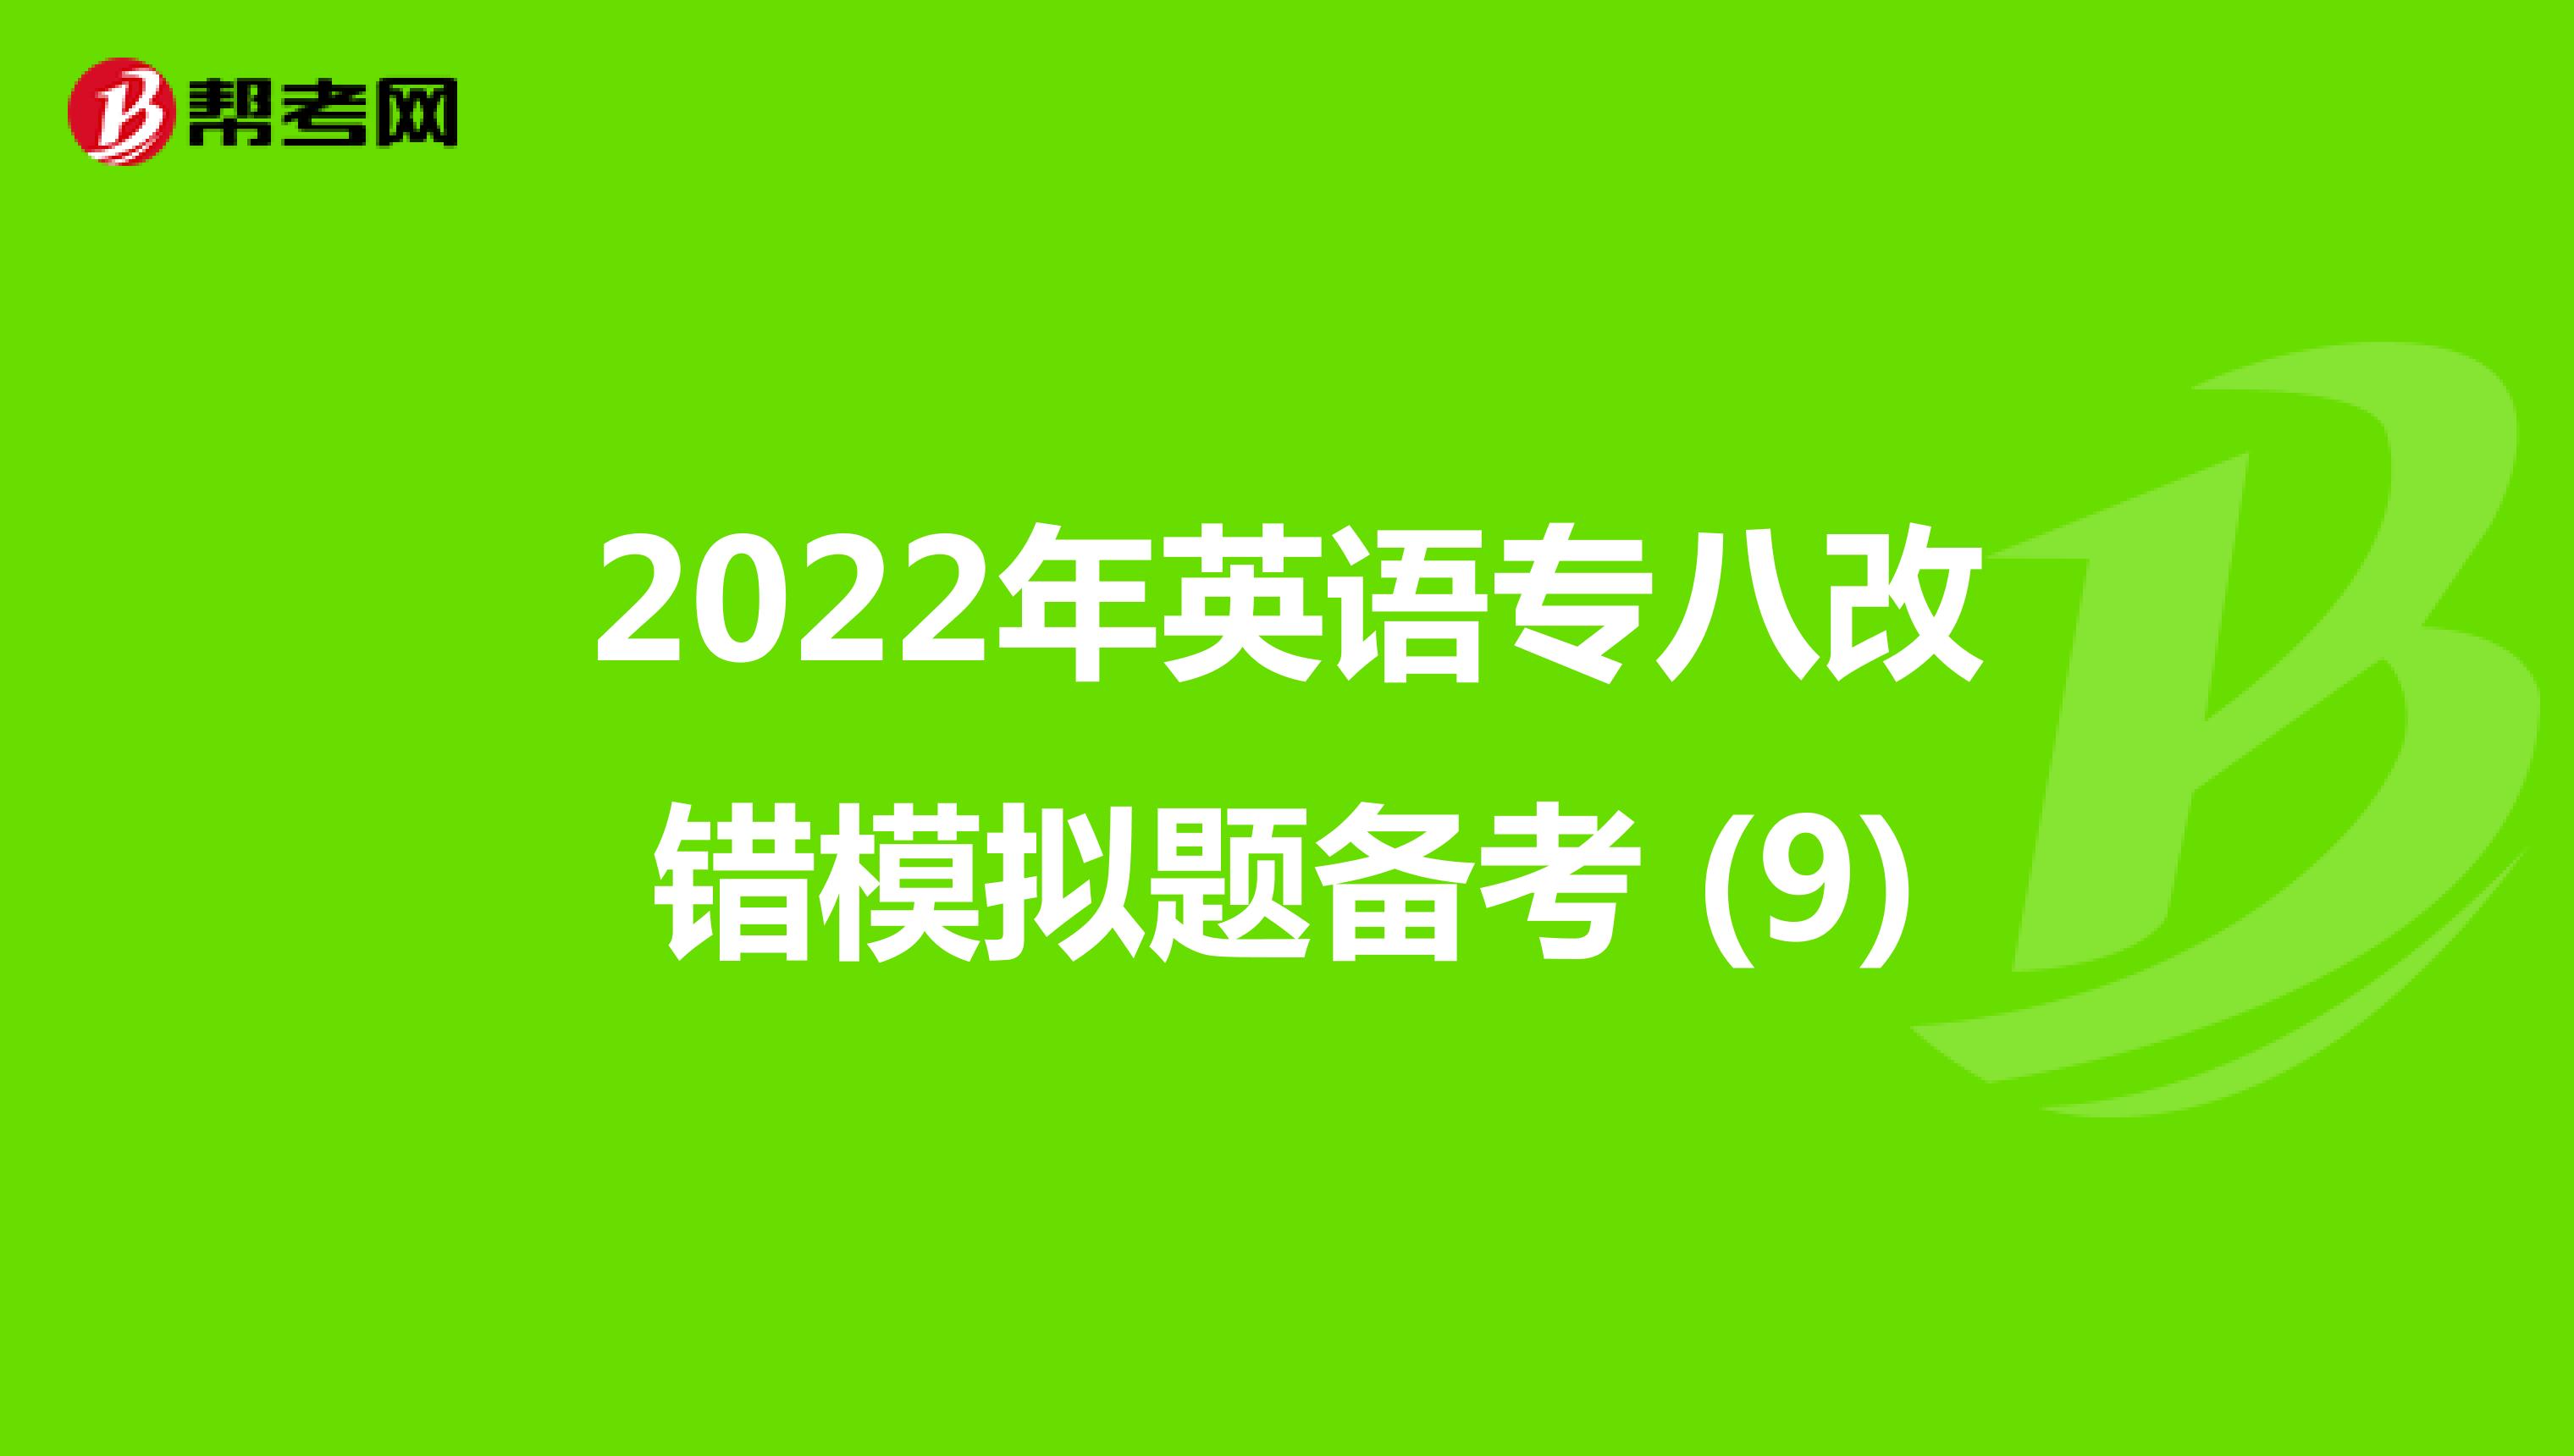 2022年英语专八改错模拟题备考 (9)